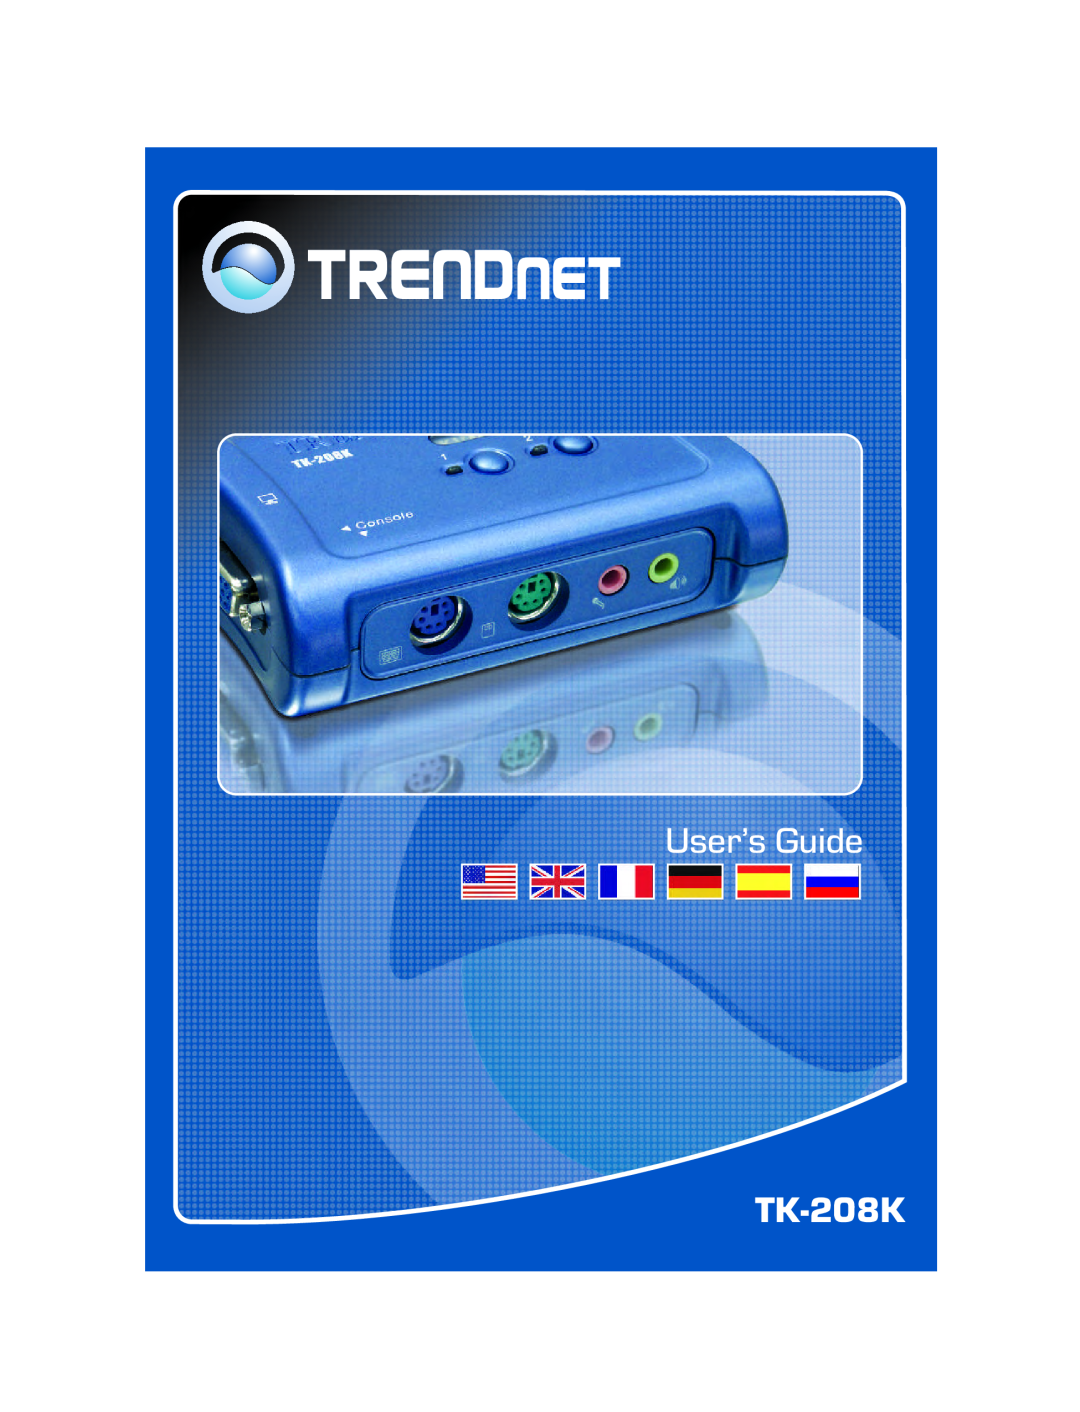 TRENDnet TK-208K manual User’s Guide 